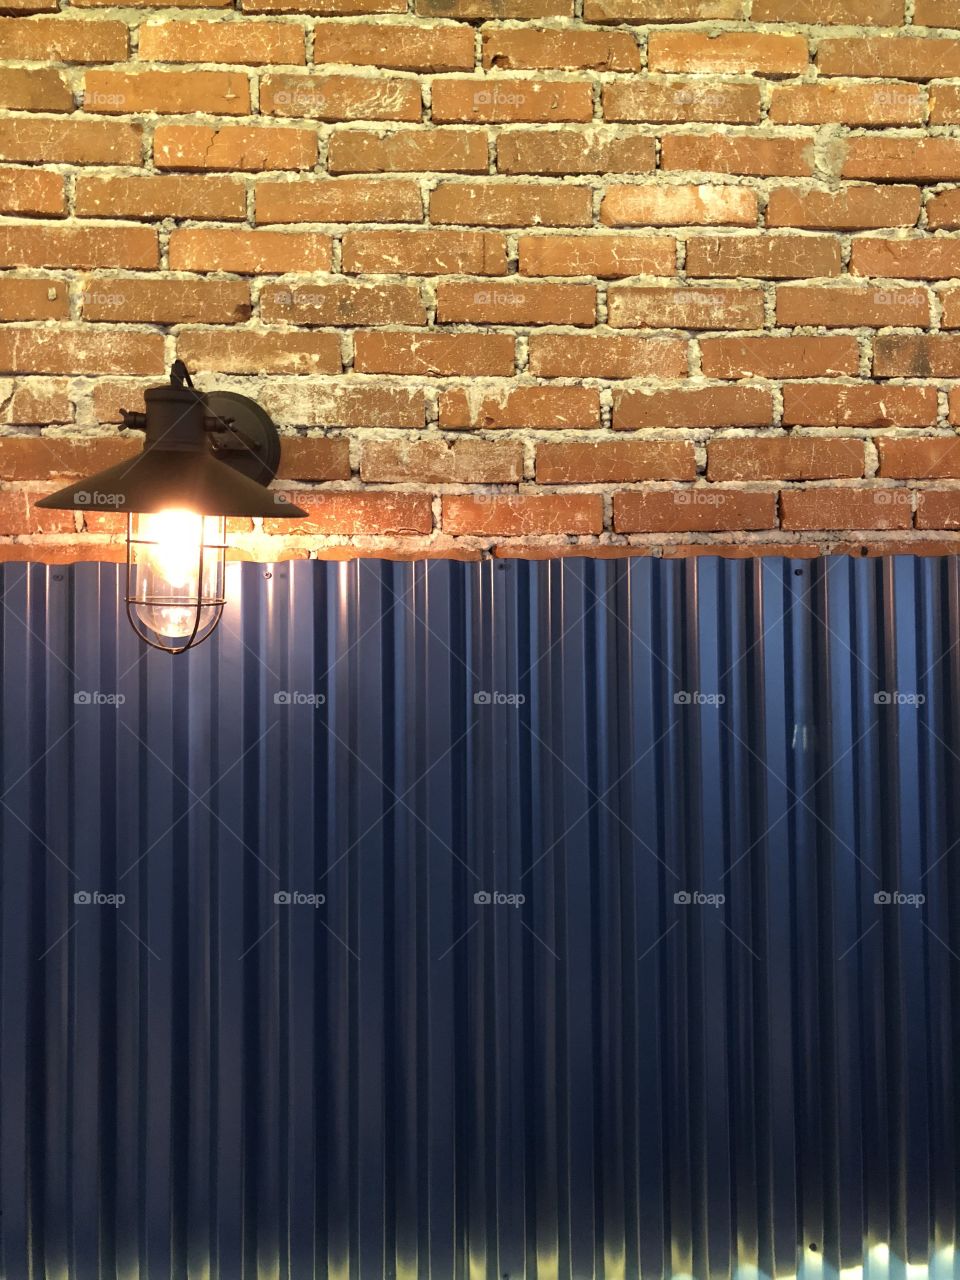 Outdoor lamp and brick wall